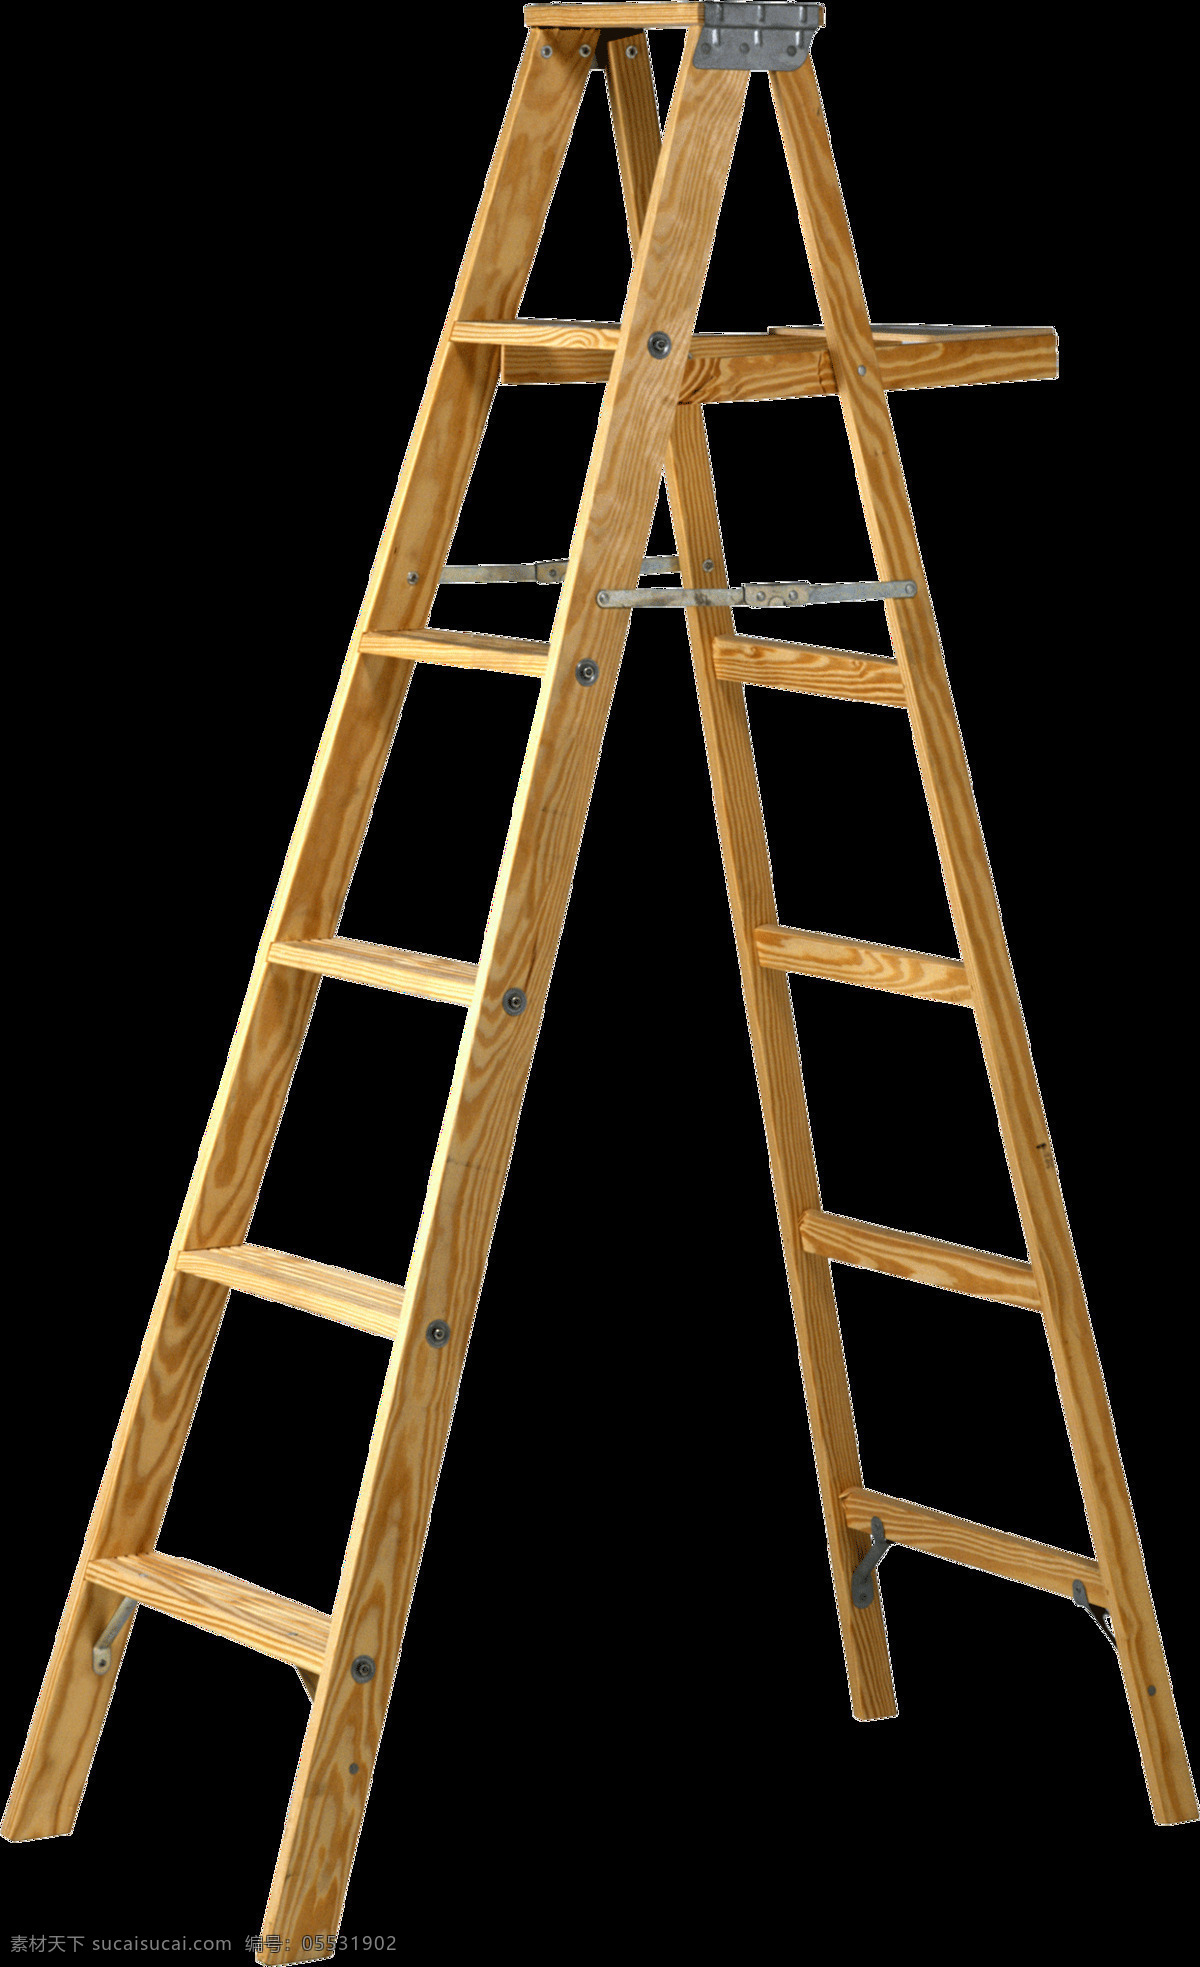 实木 人字 梯子 免 抠 透明 图 层 梯子卡通图片 叠梯子 翻墙梯子 吊梯子 铁梯子 架梯子 创意梯子 长梯子 梯子素材 木头梯子 木梯子 竹梯子 云梯 工程梯子 折叠梯子